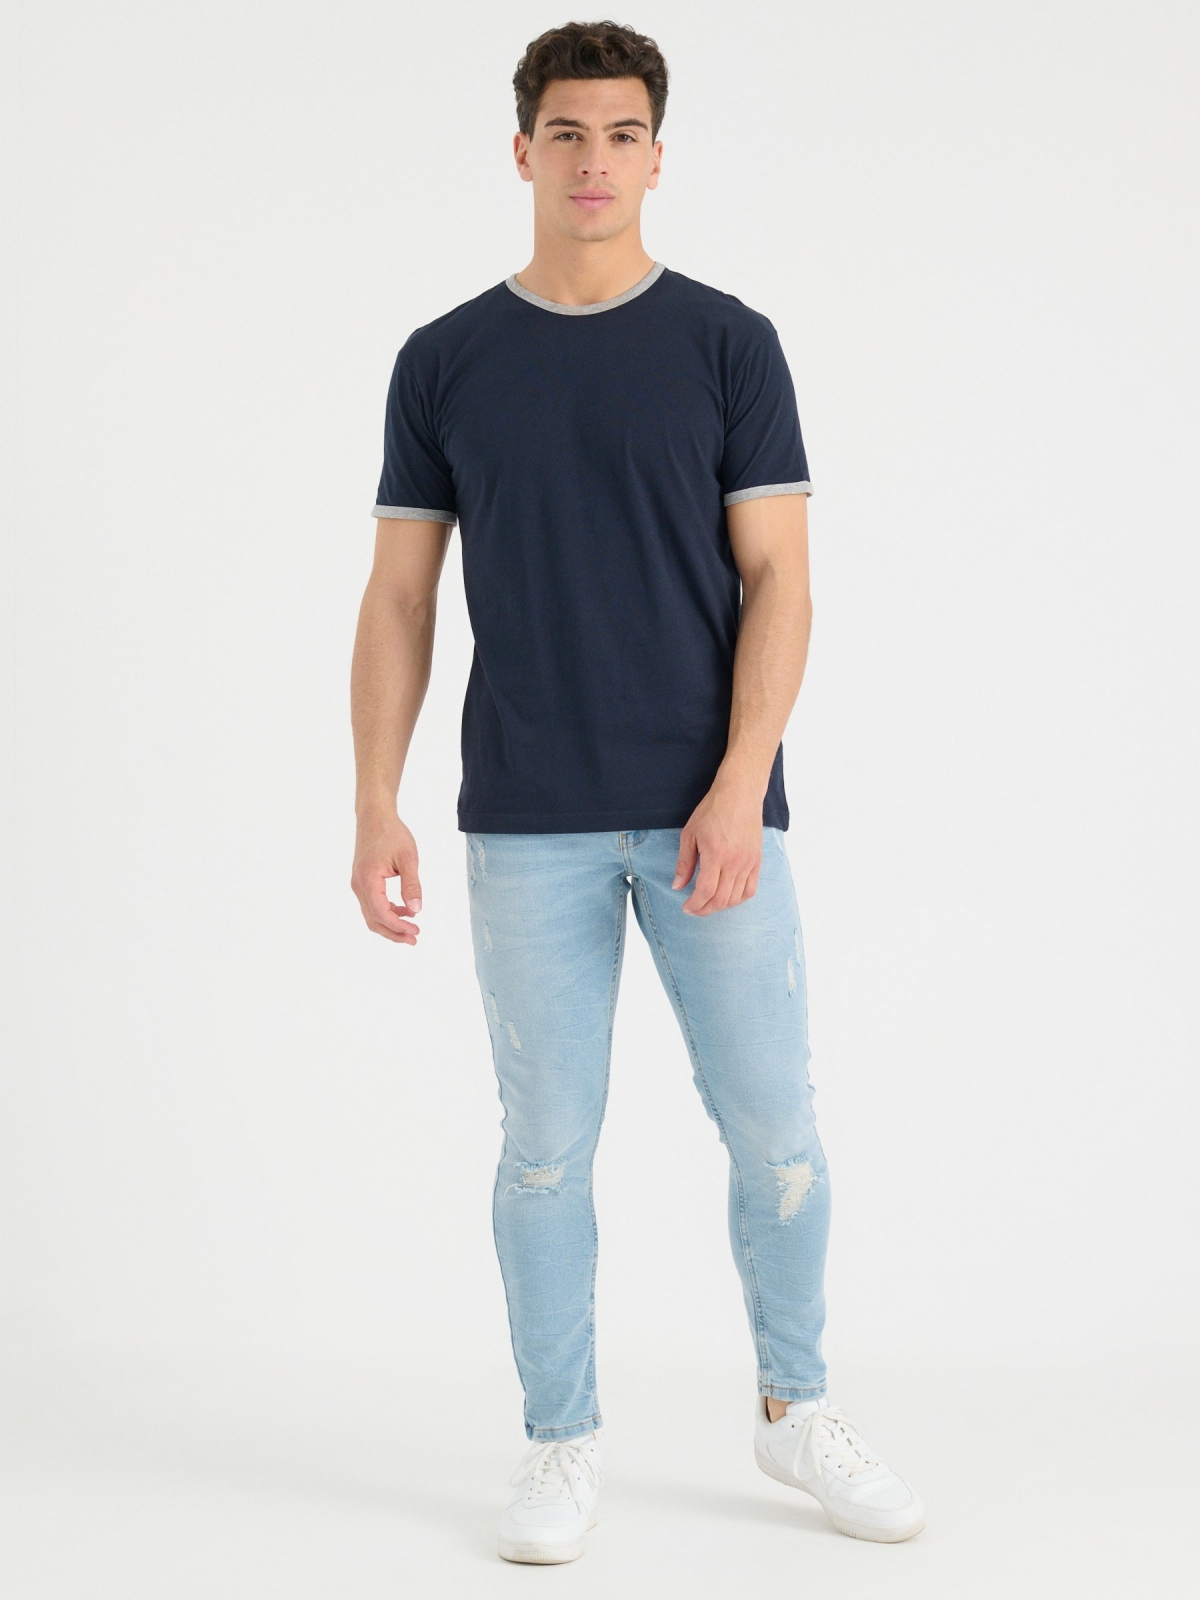 T-shirt básica com contrastes azul marinho vista geral frontal